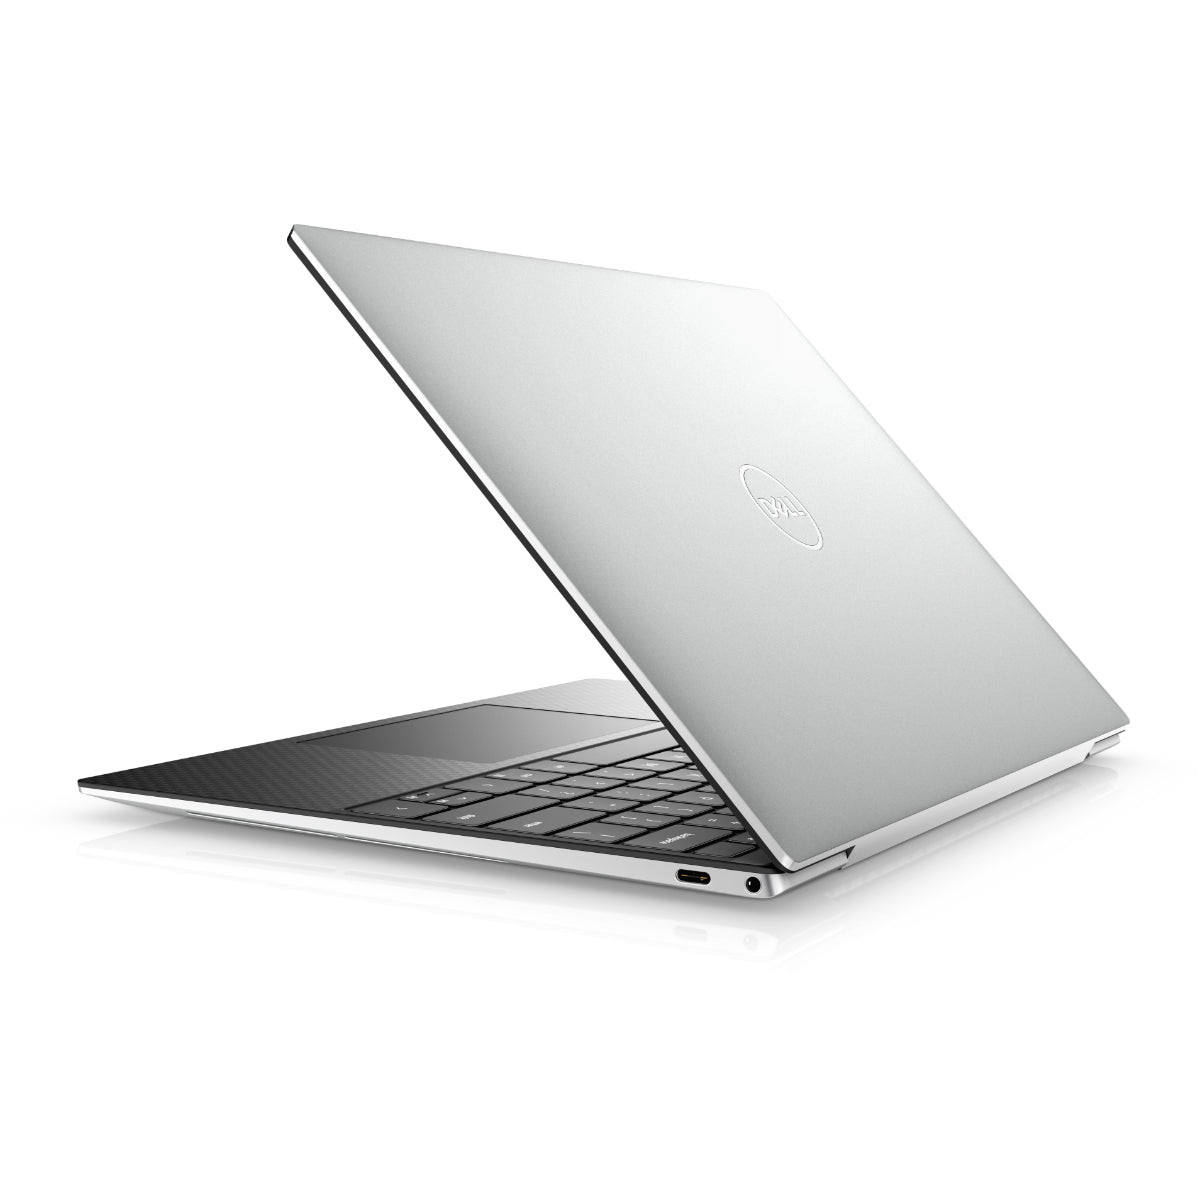 Dell XPS 13 9310 I5 11th Gen 2.4 Ghz Quad Core Laptop